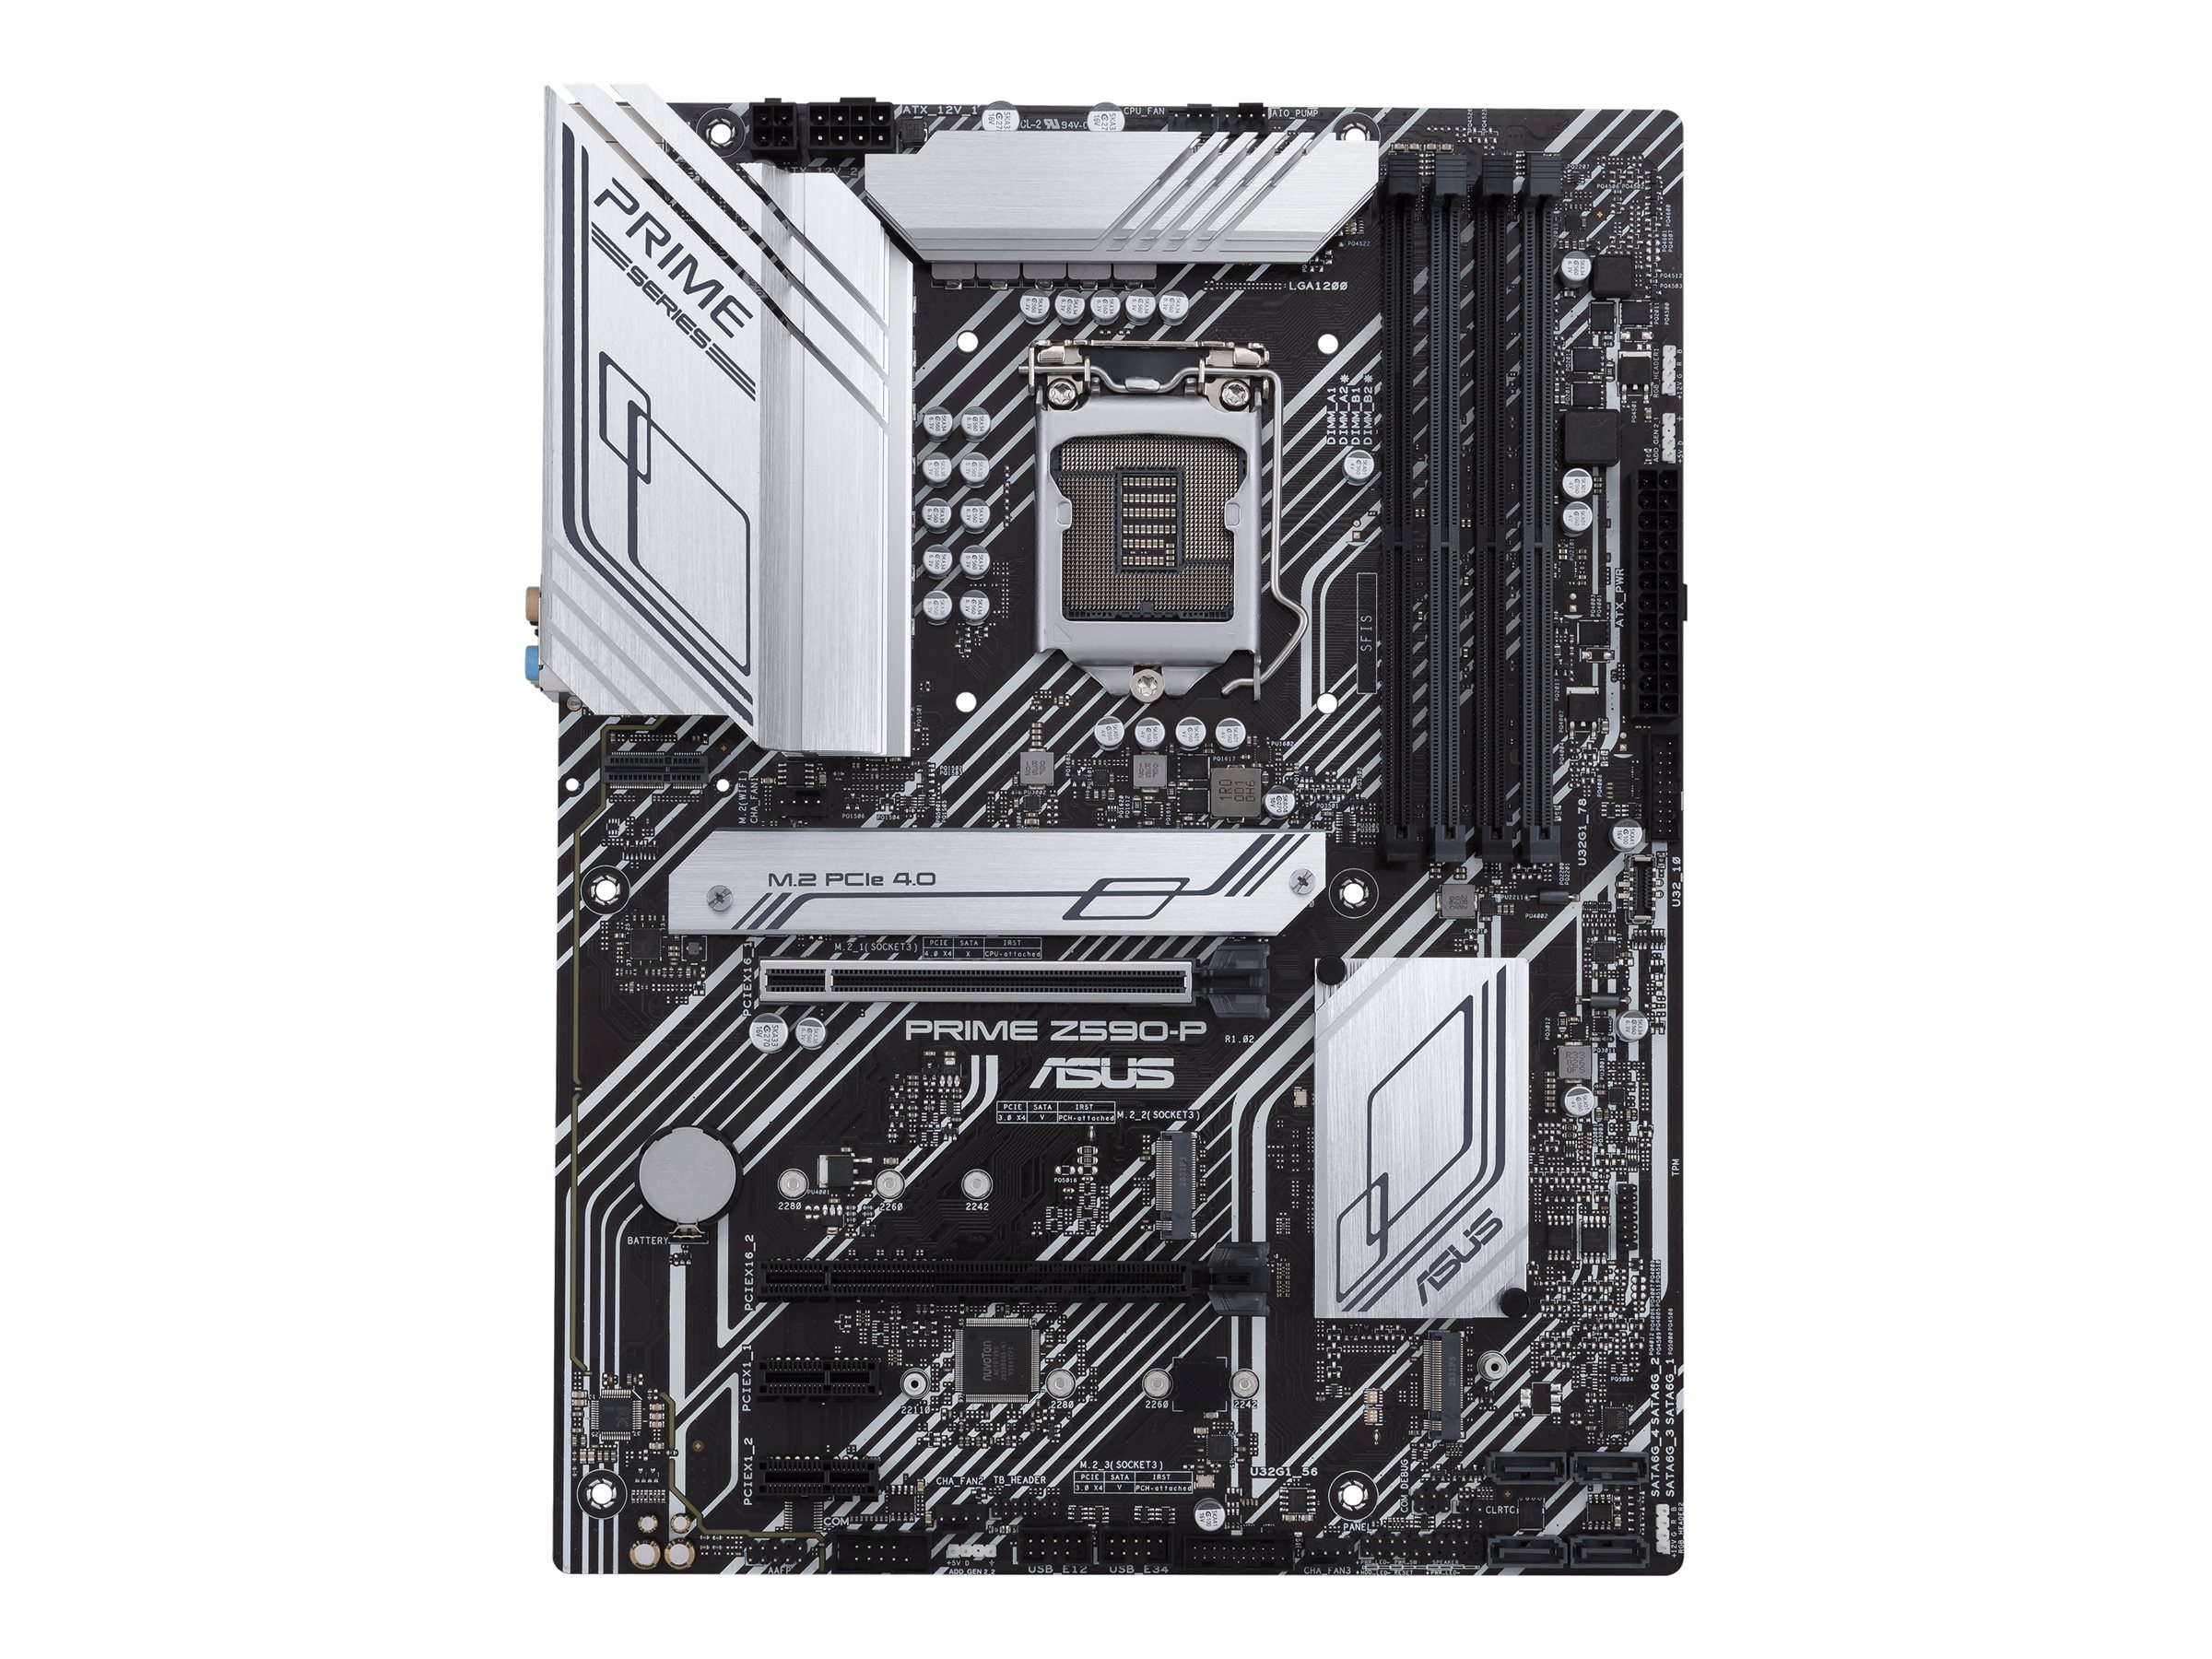 Vorschau: ASUS PRIME Z590-P - Motherboard - ATX - LGA1200-Sockel - Z590 - USB-C Gen1, USB 3.2 Gen 1, USB 3.2 Gen 2, USB-C Gen 2x2 - 2.5 Gigabit LAN - Onboard-Grafik (CPU erforderlich)